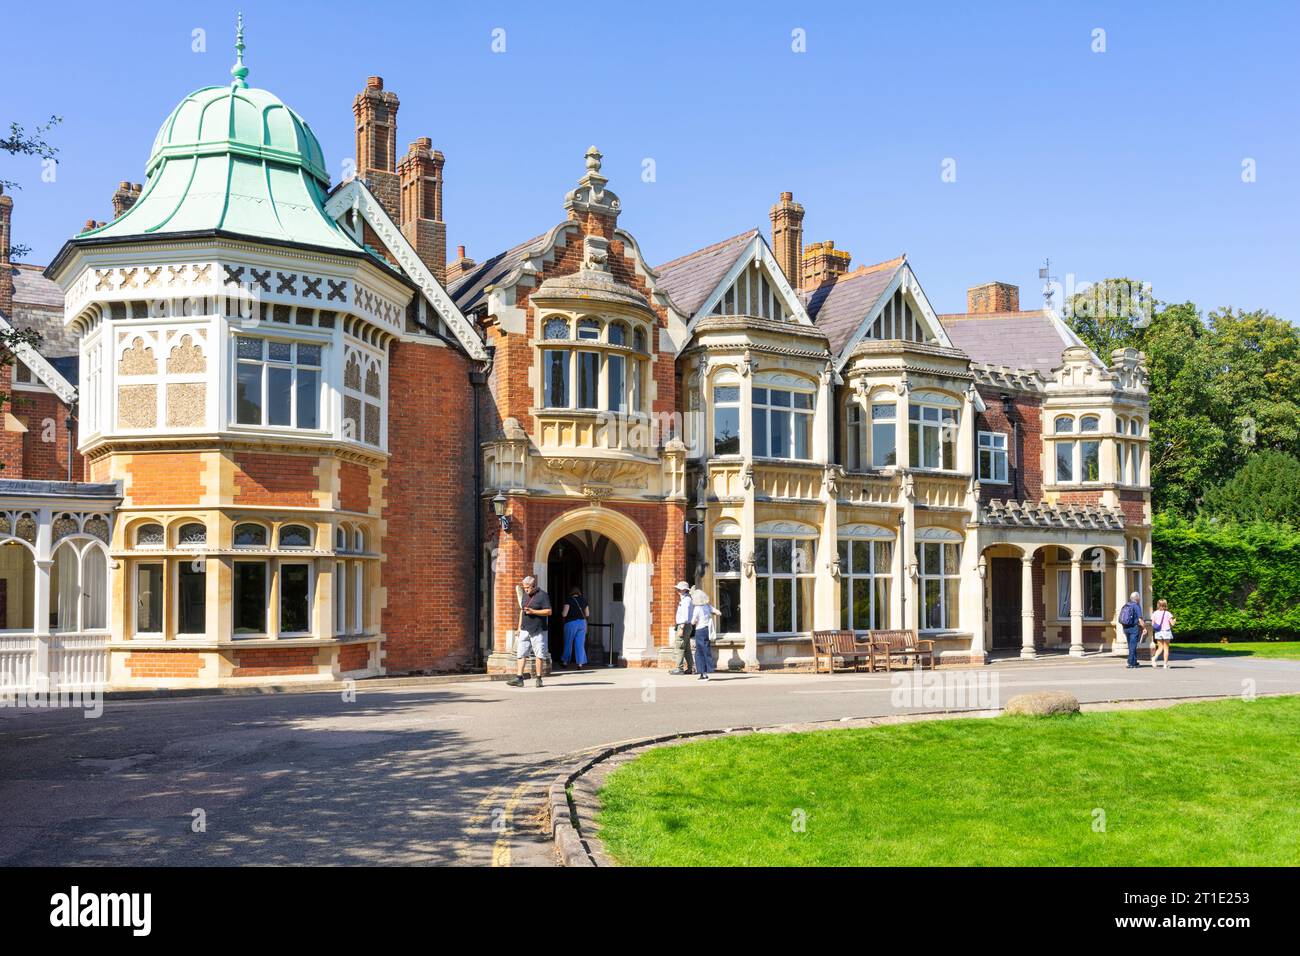 Bletchley Park House mit Menschen am Eingang zum Bletchley Park Mansion Bletchley Park Milton Keynes Buckinghamshire England Großbritannien GB Europa Stockfoto